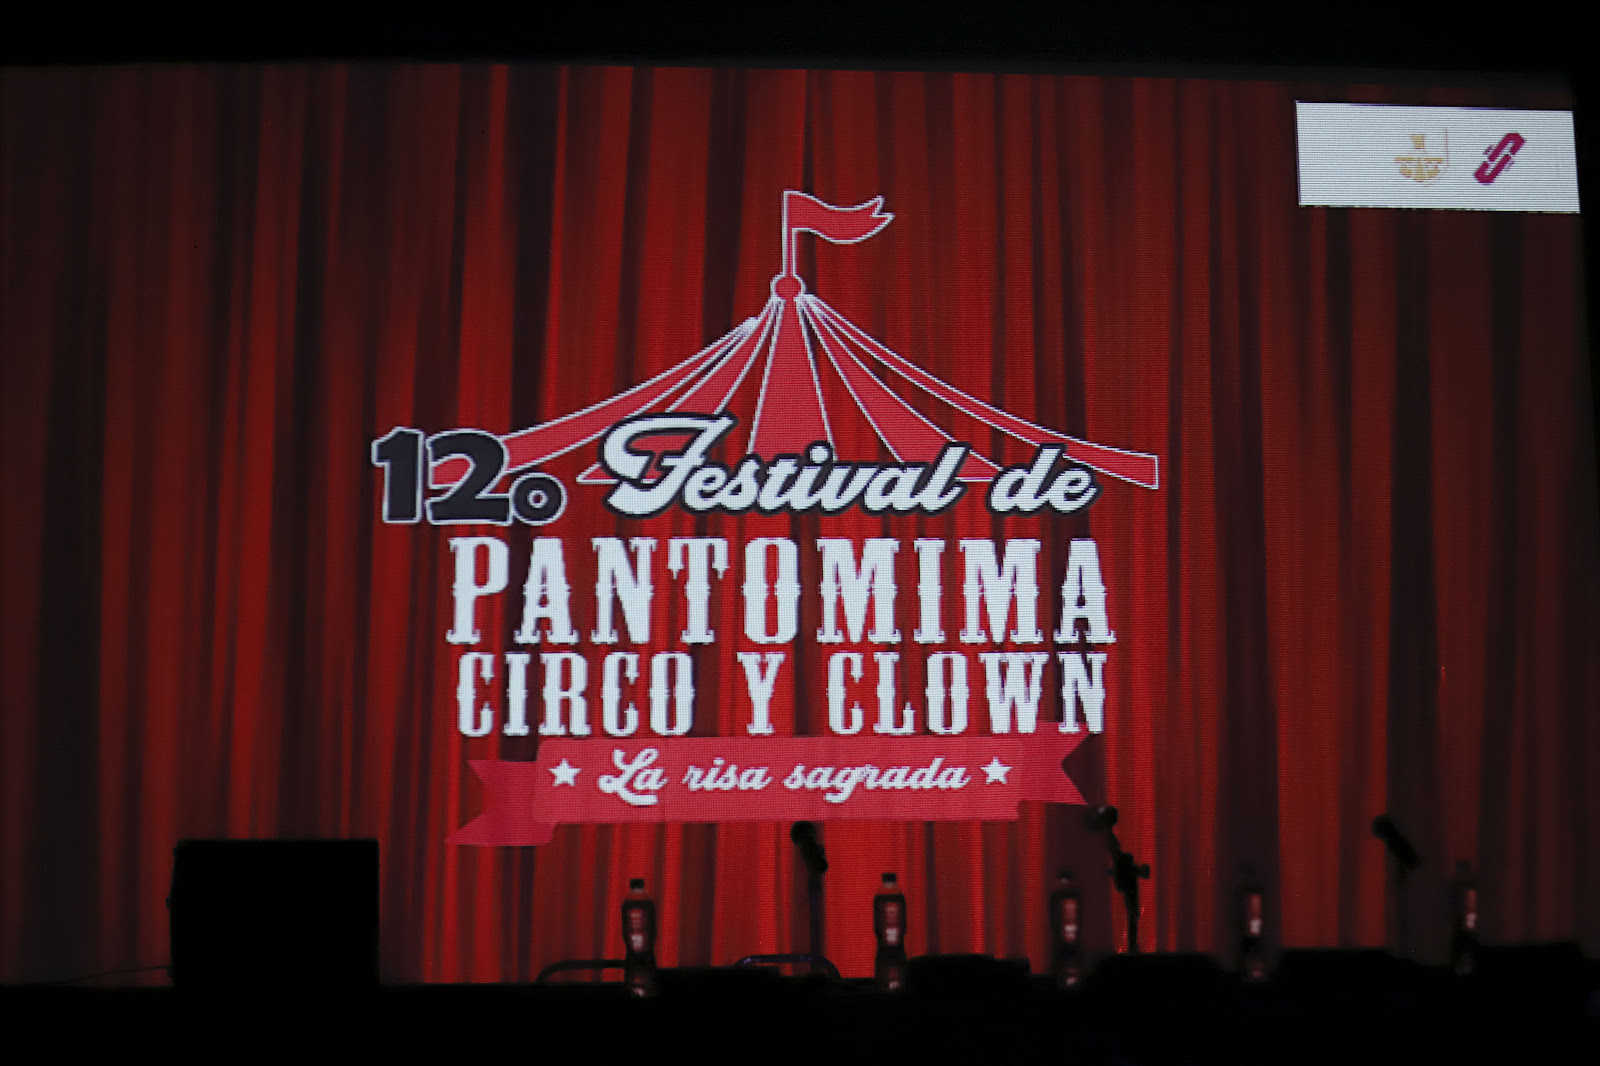 Festival de Circo Pantomima y Clown La Risa Sagrada llega a su doceava edición